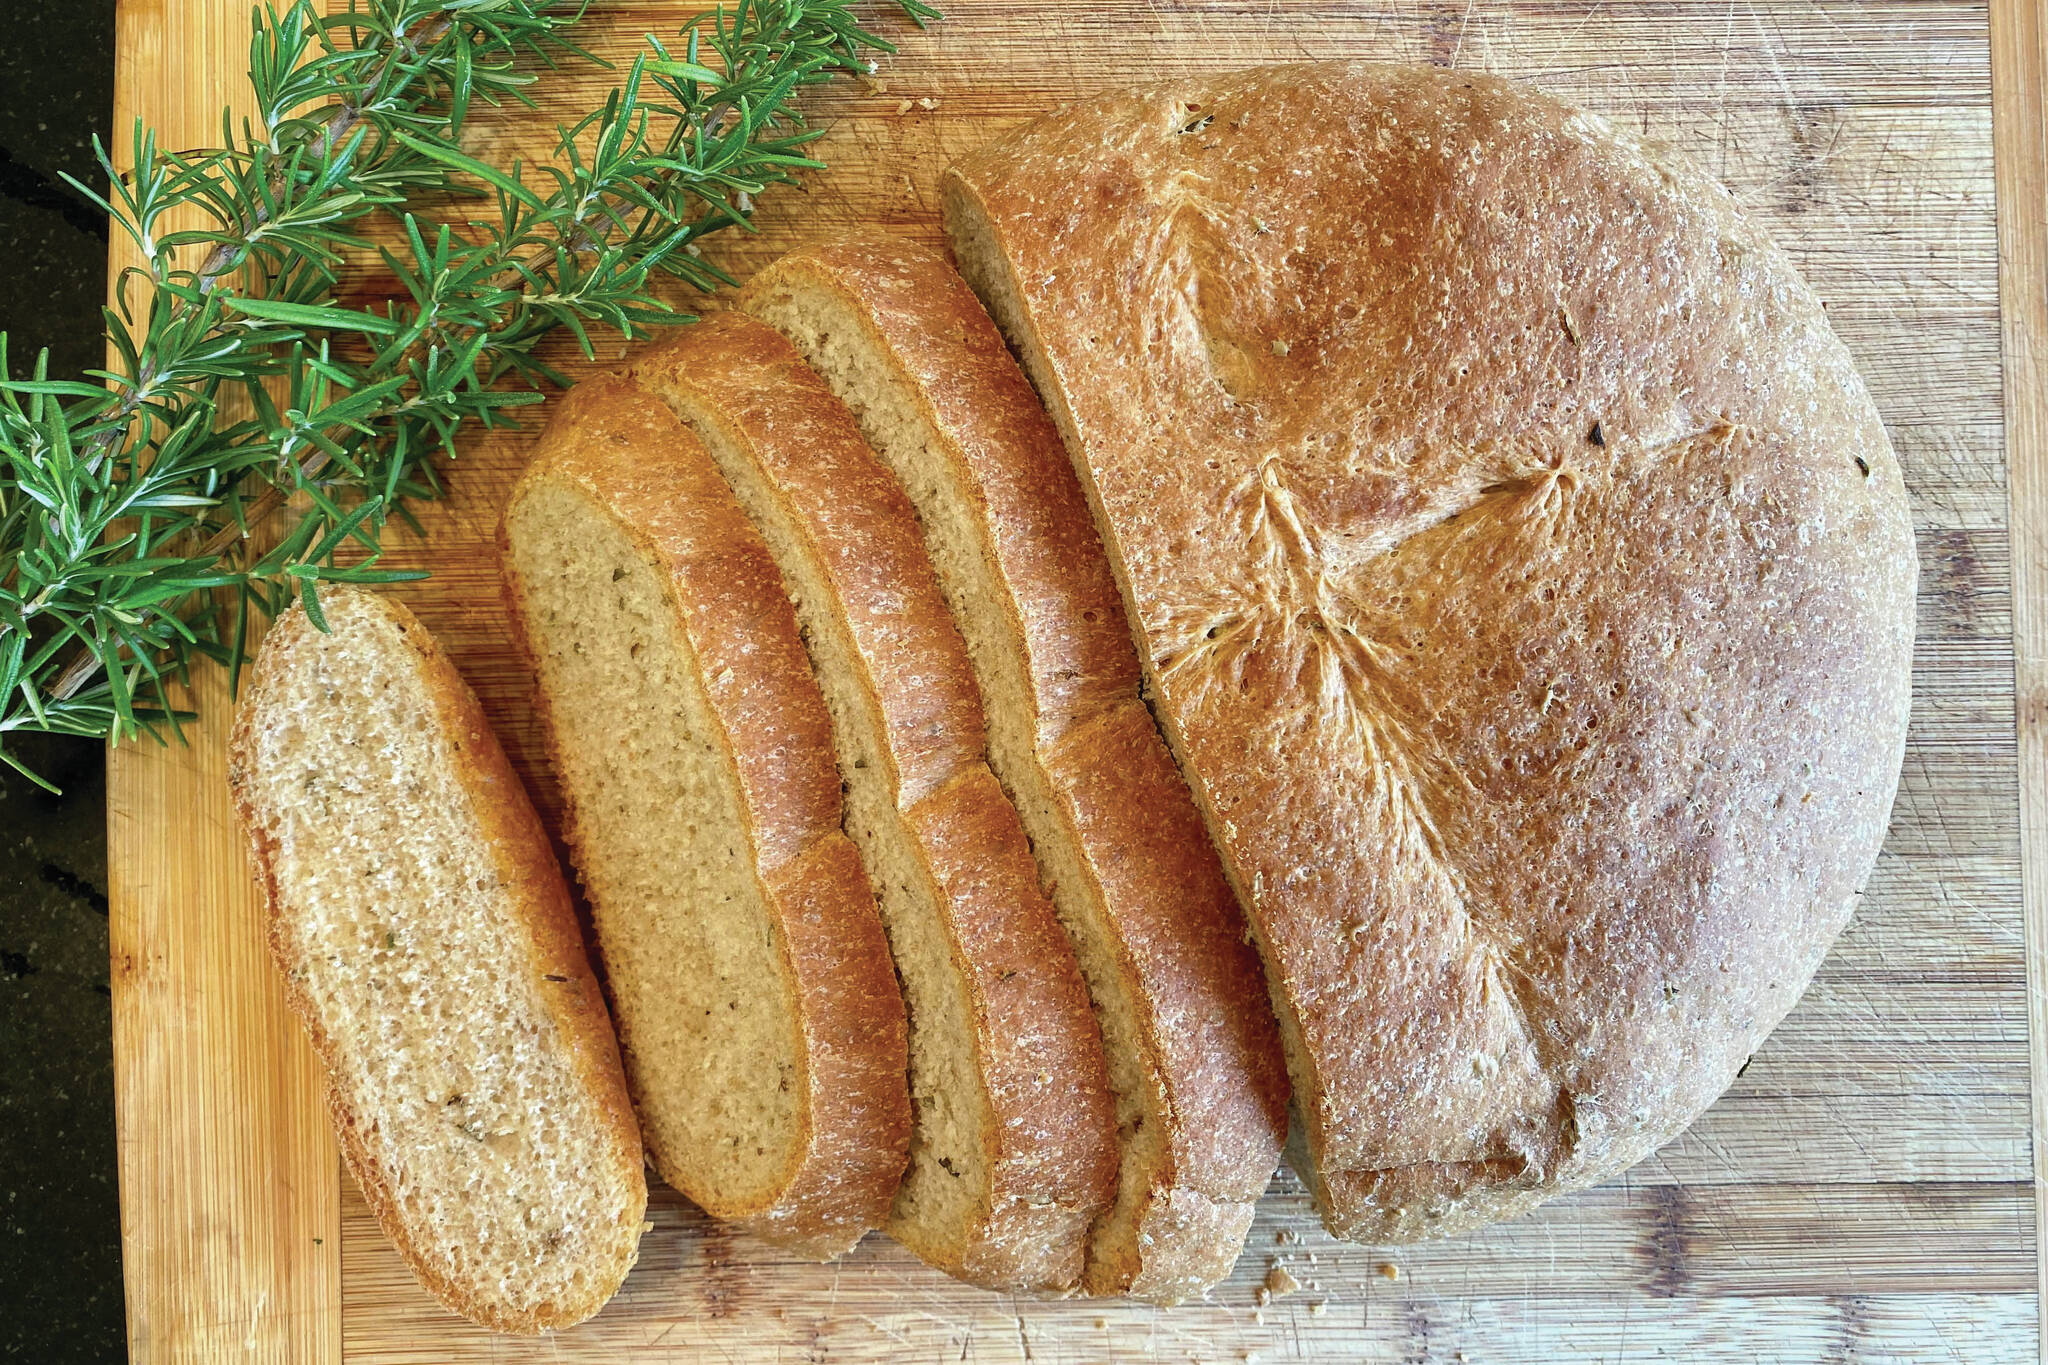 Rosemary bread. (Photo by Tressa Dale)